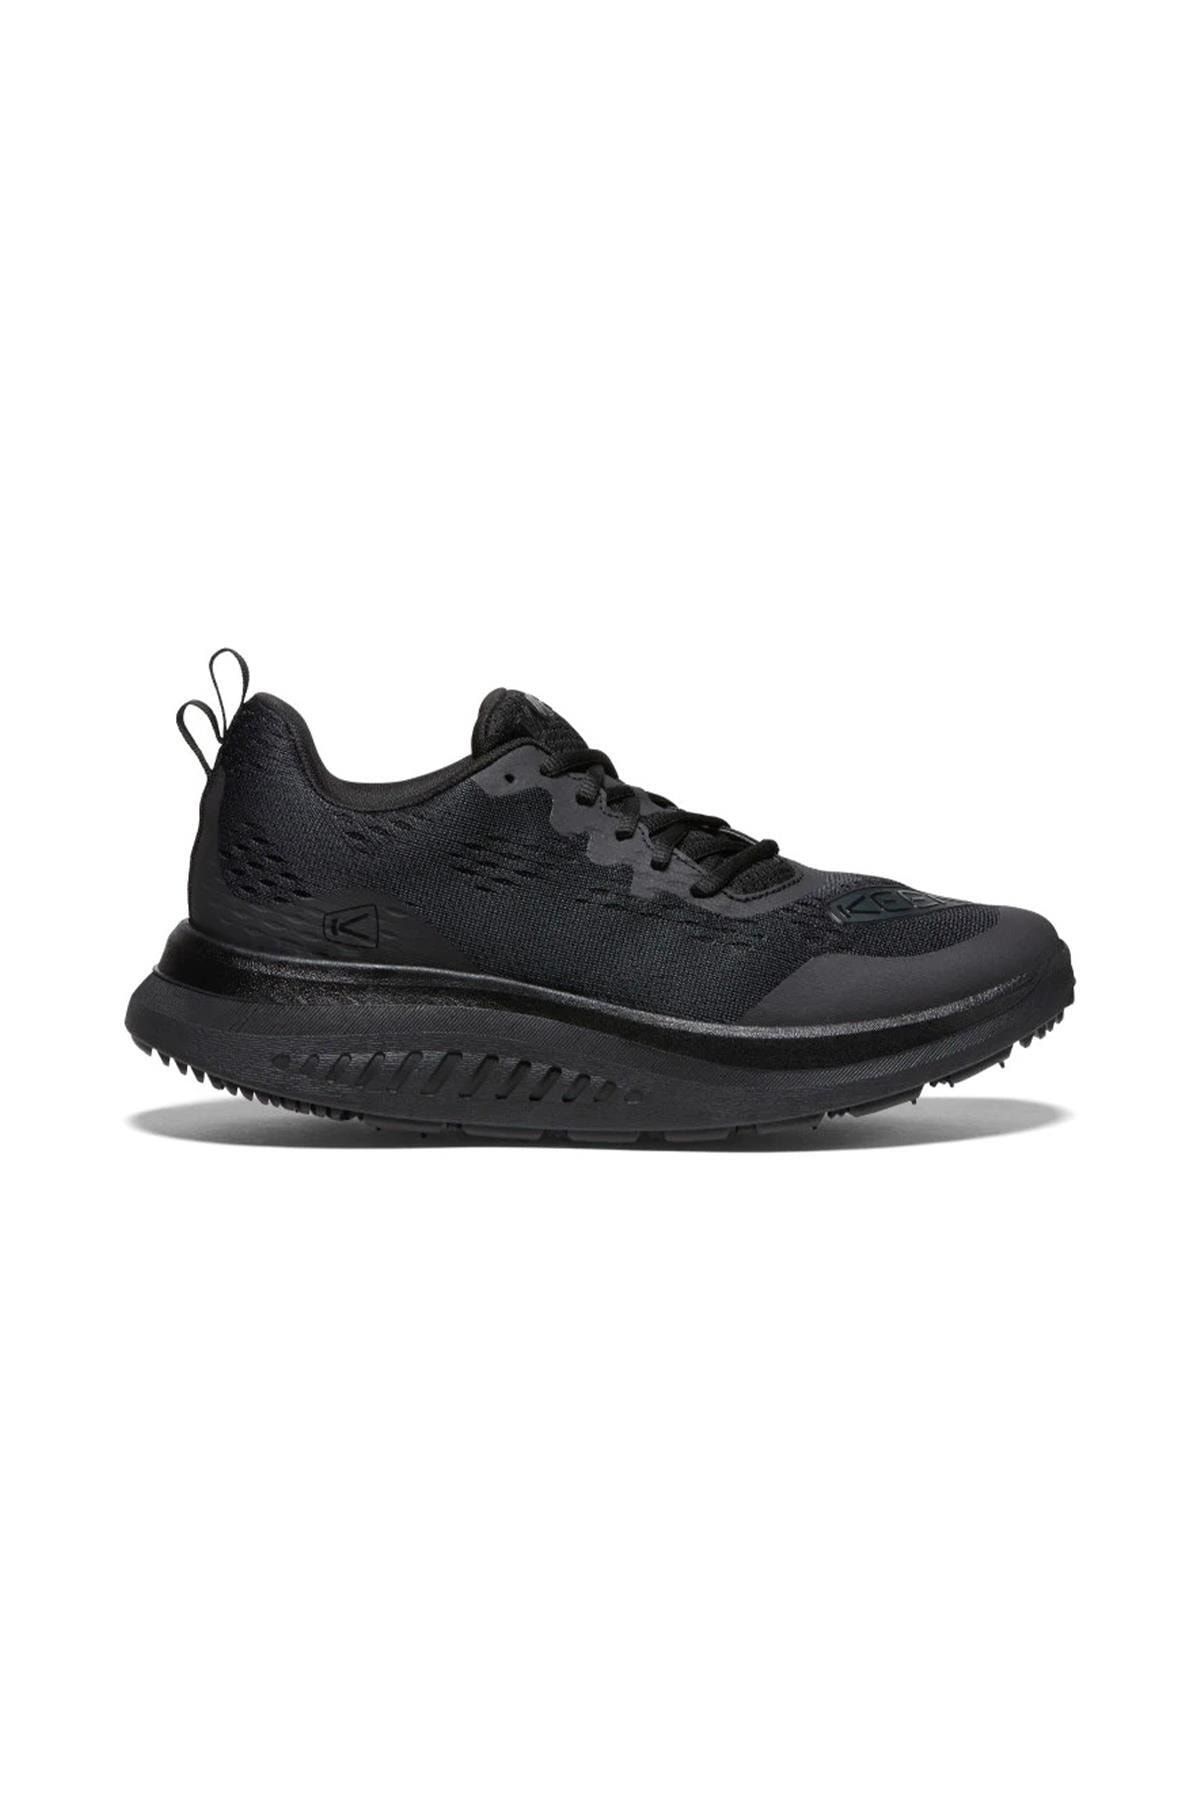 Keen Wk400 - Erkek Yürüyüş Ayakkabısı - Siyah